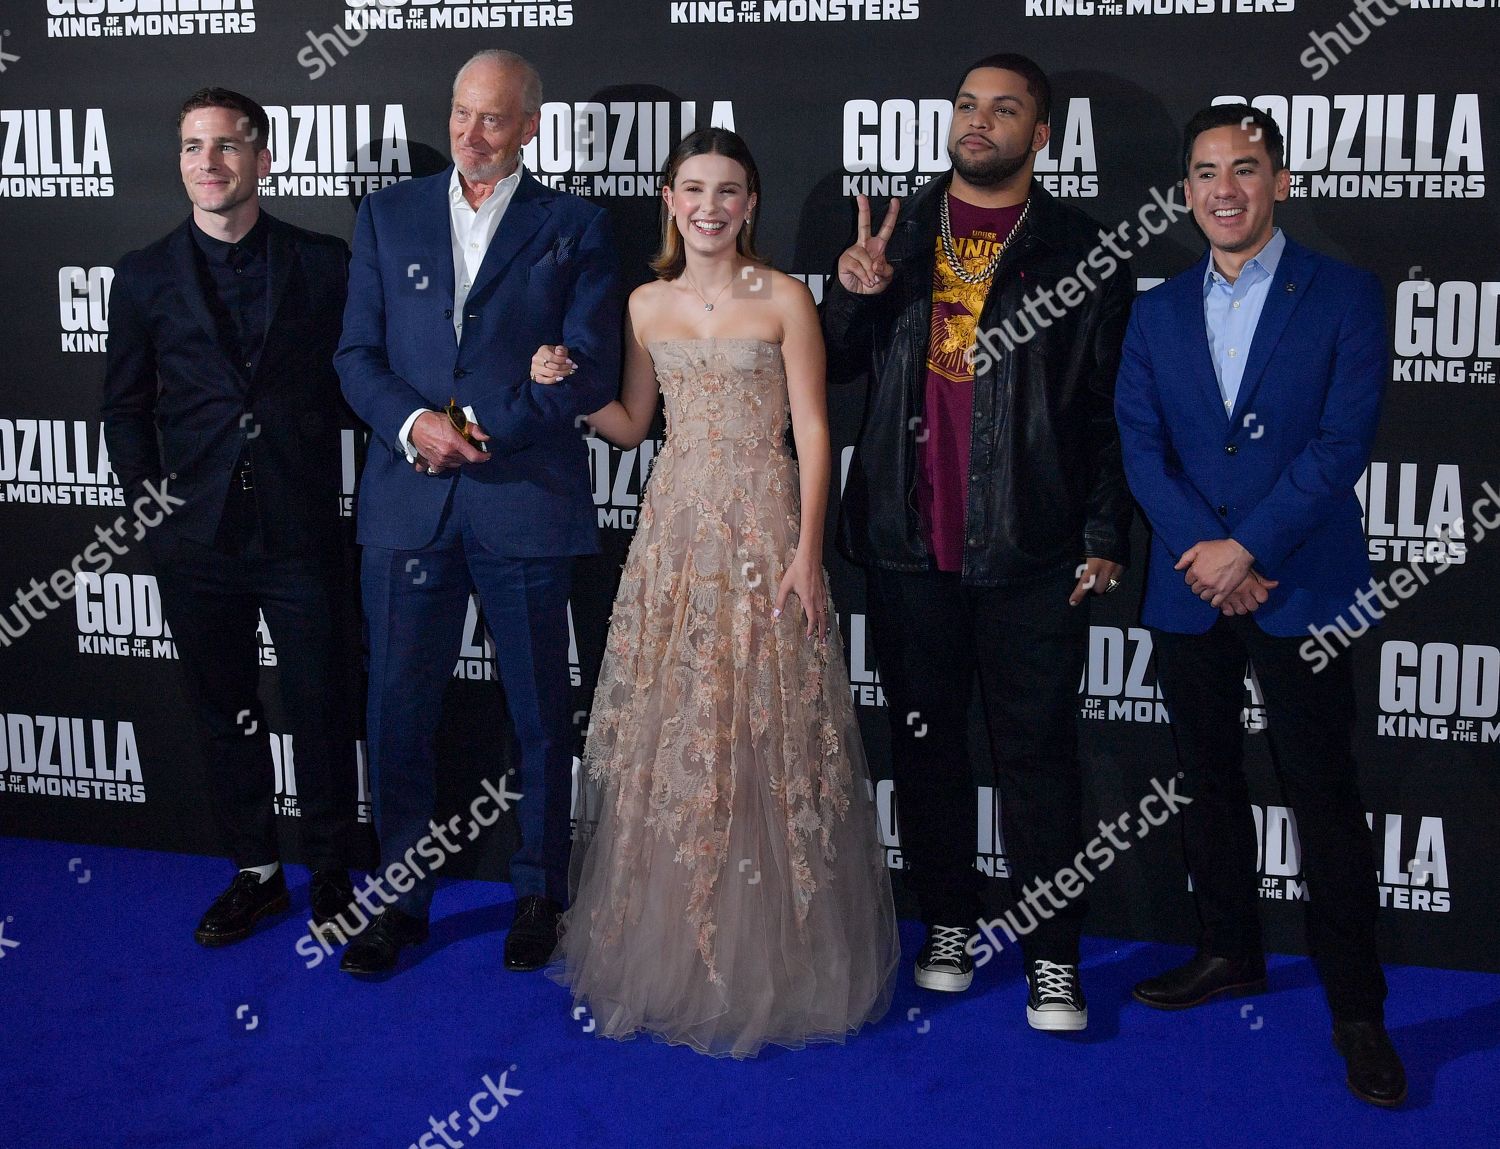 godzilla 2019 premiere